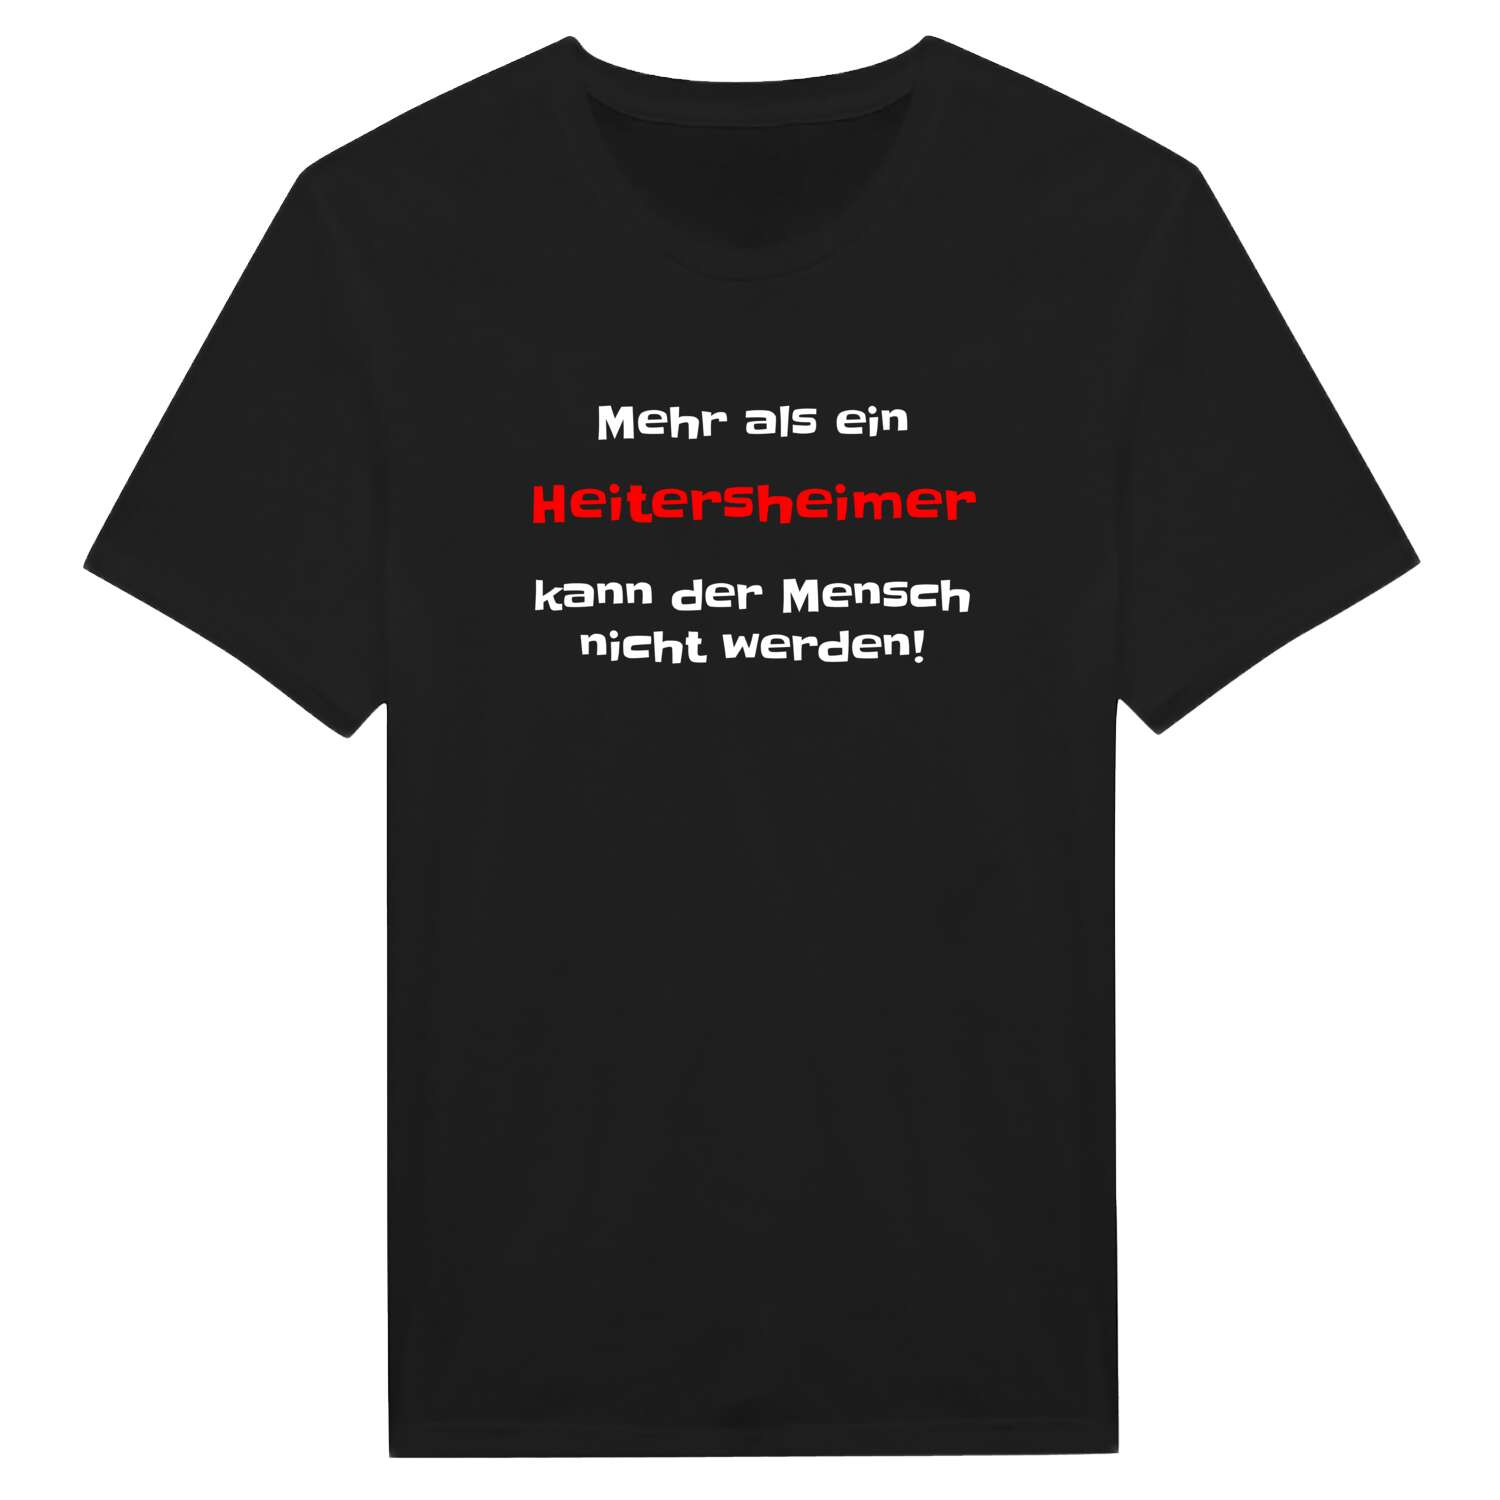 Heitersheim T-Shirt »Mehr als ein«